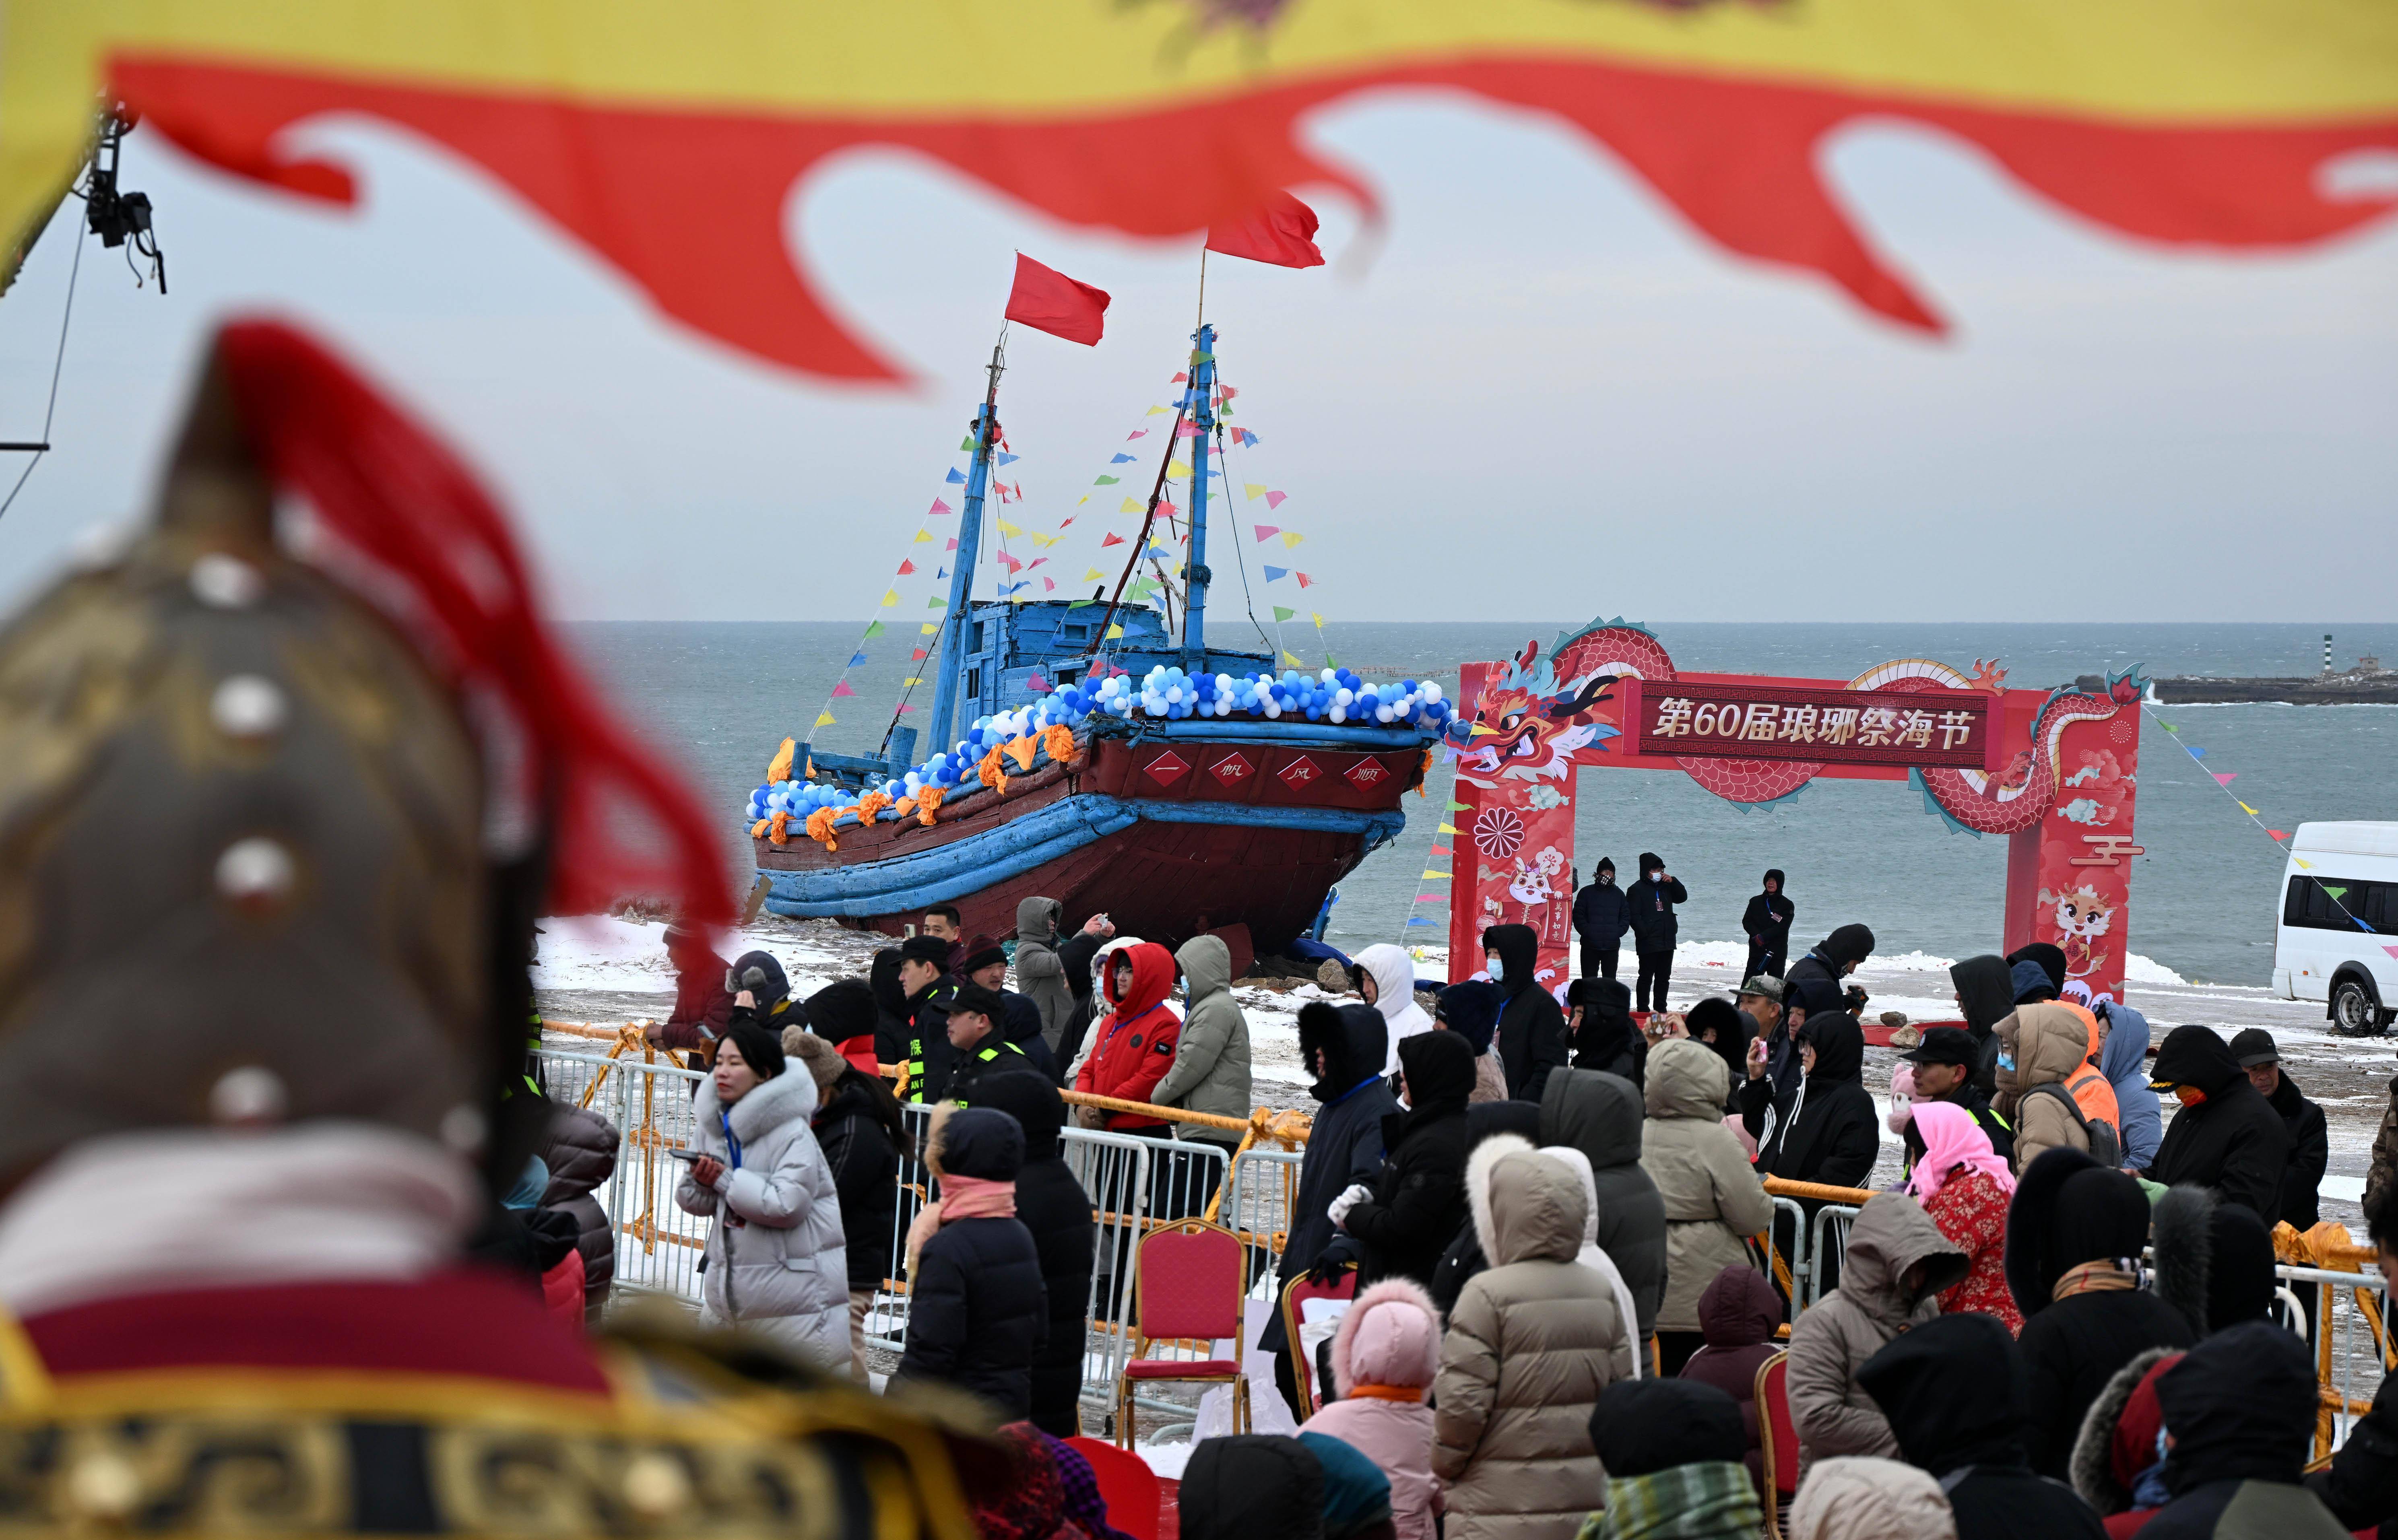 2月22日,市民和游客在观看祭海仪式表演 新华社记者 李紫恒 摄